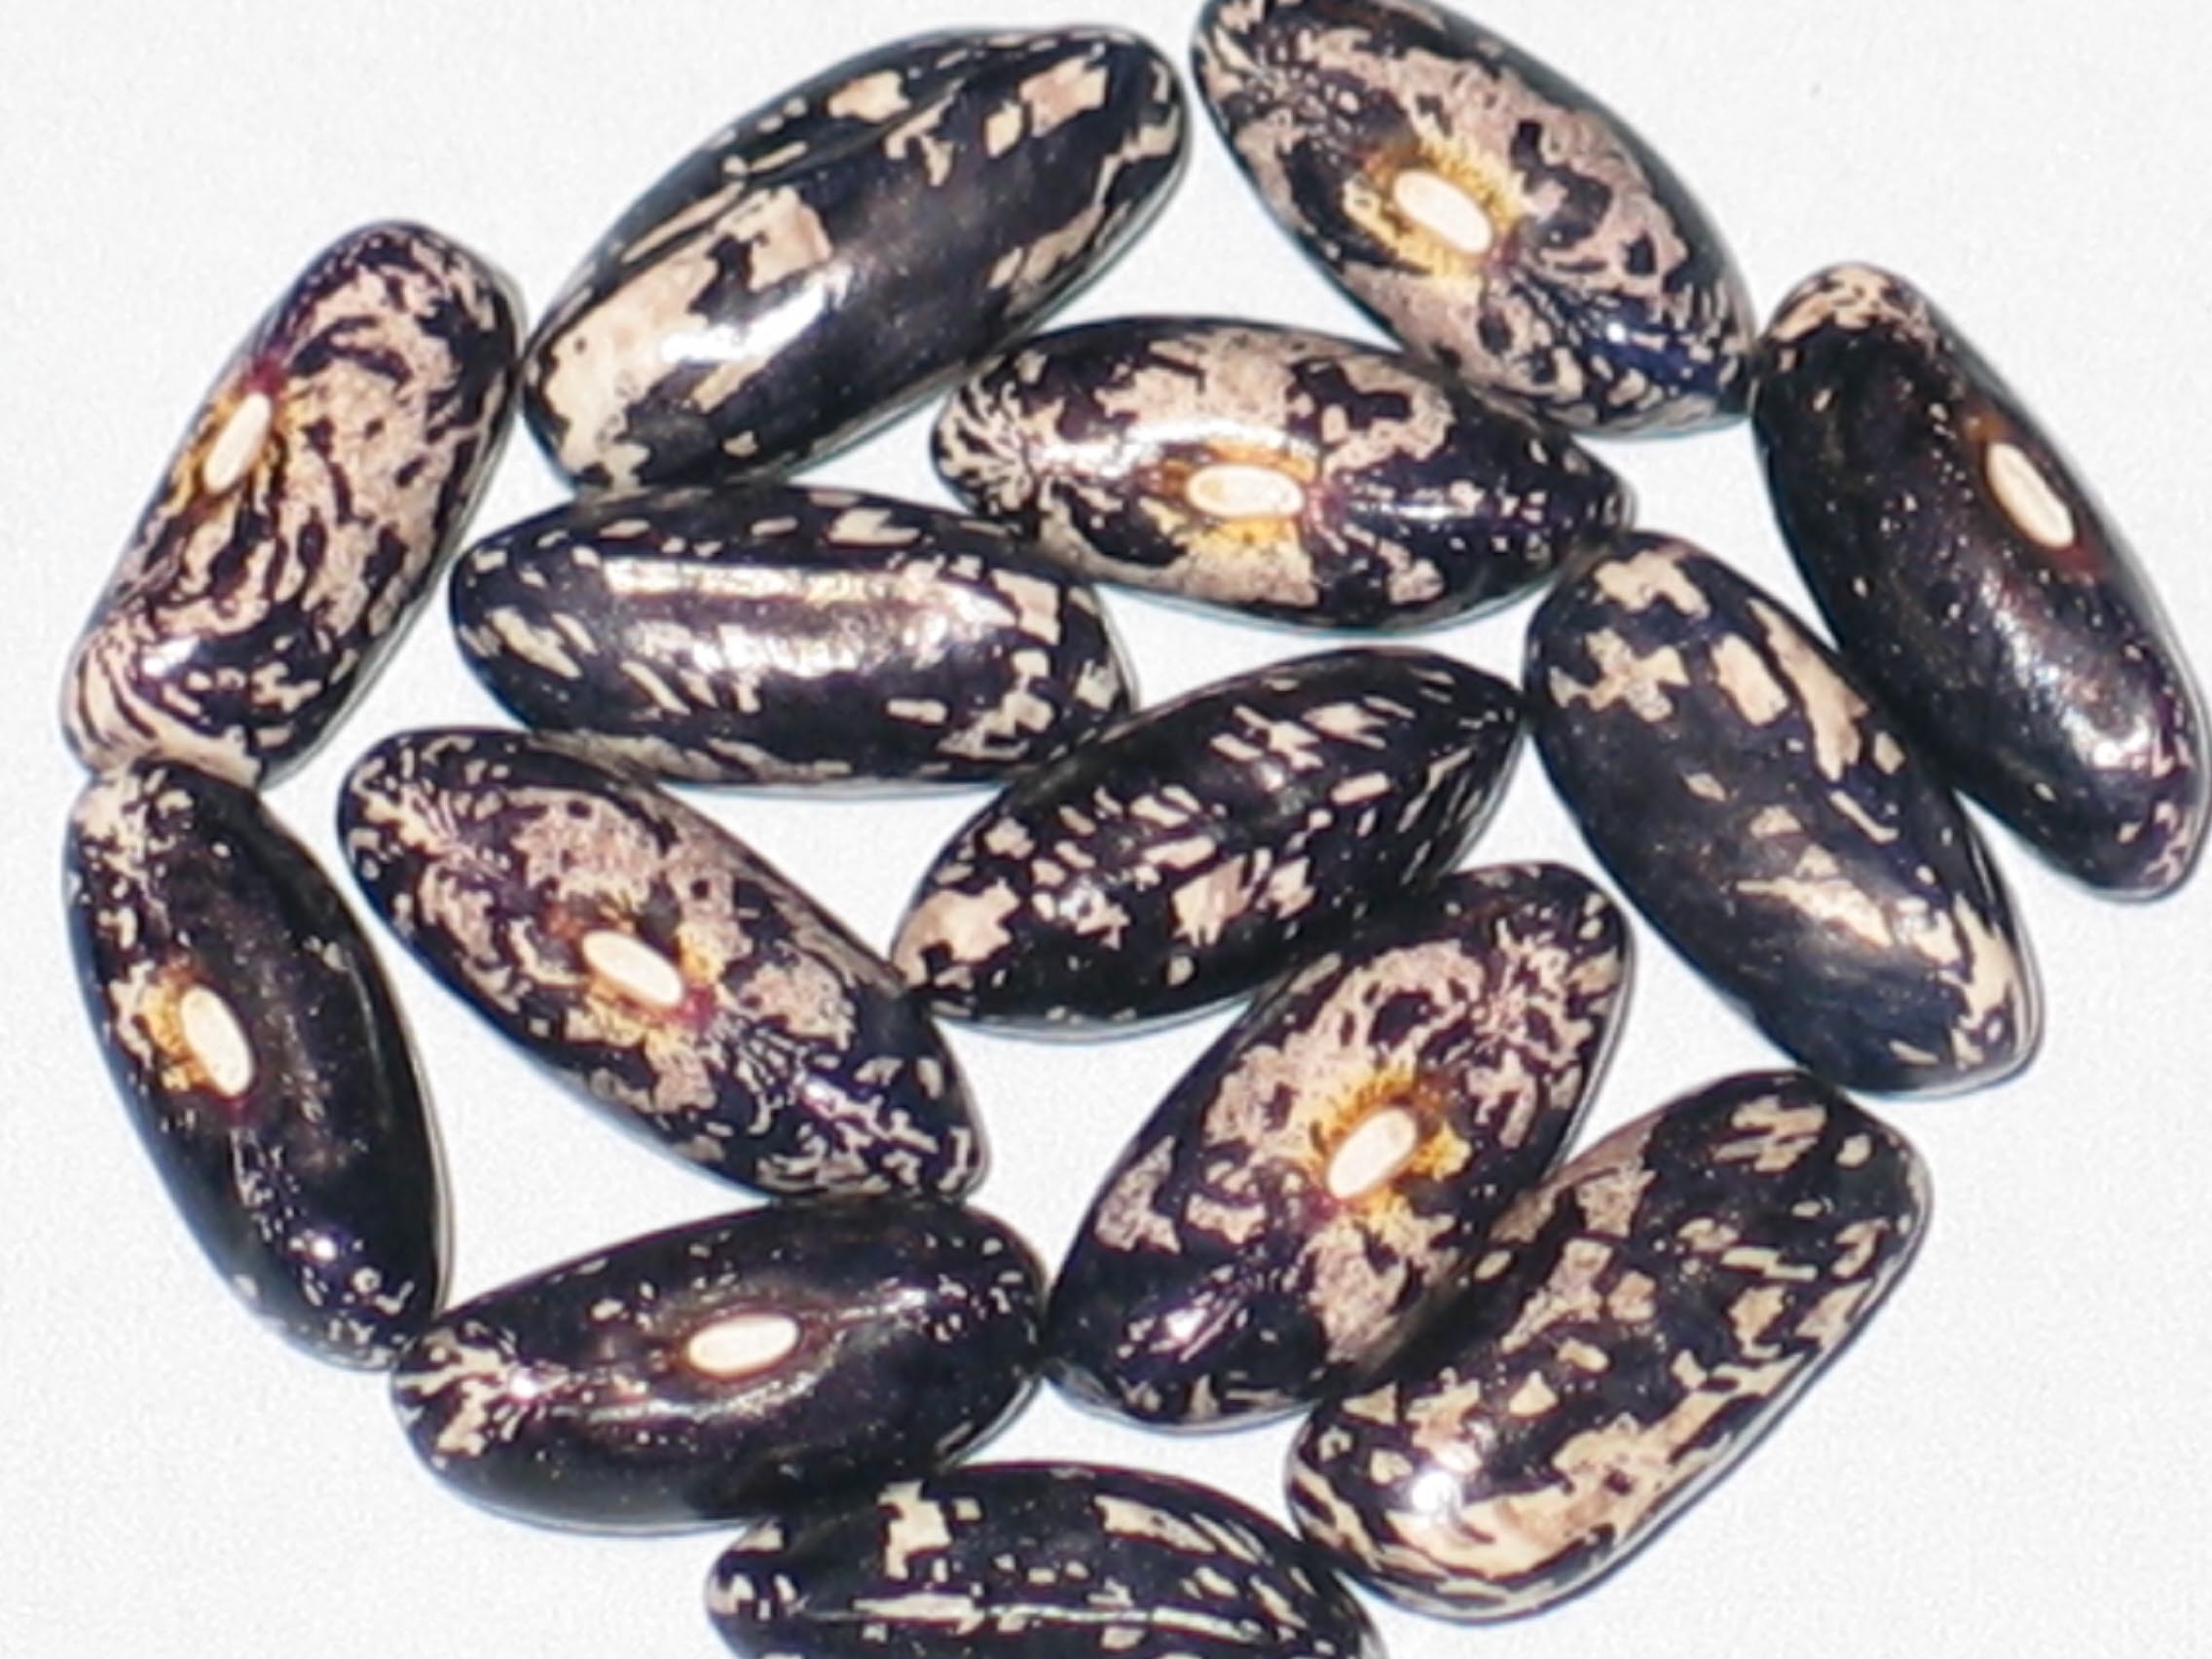 image of Idaho Refugee beans